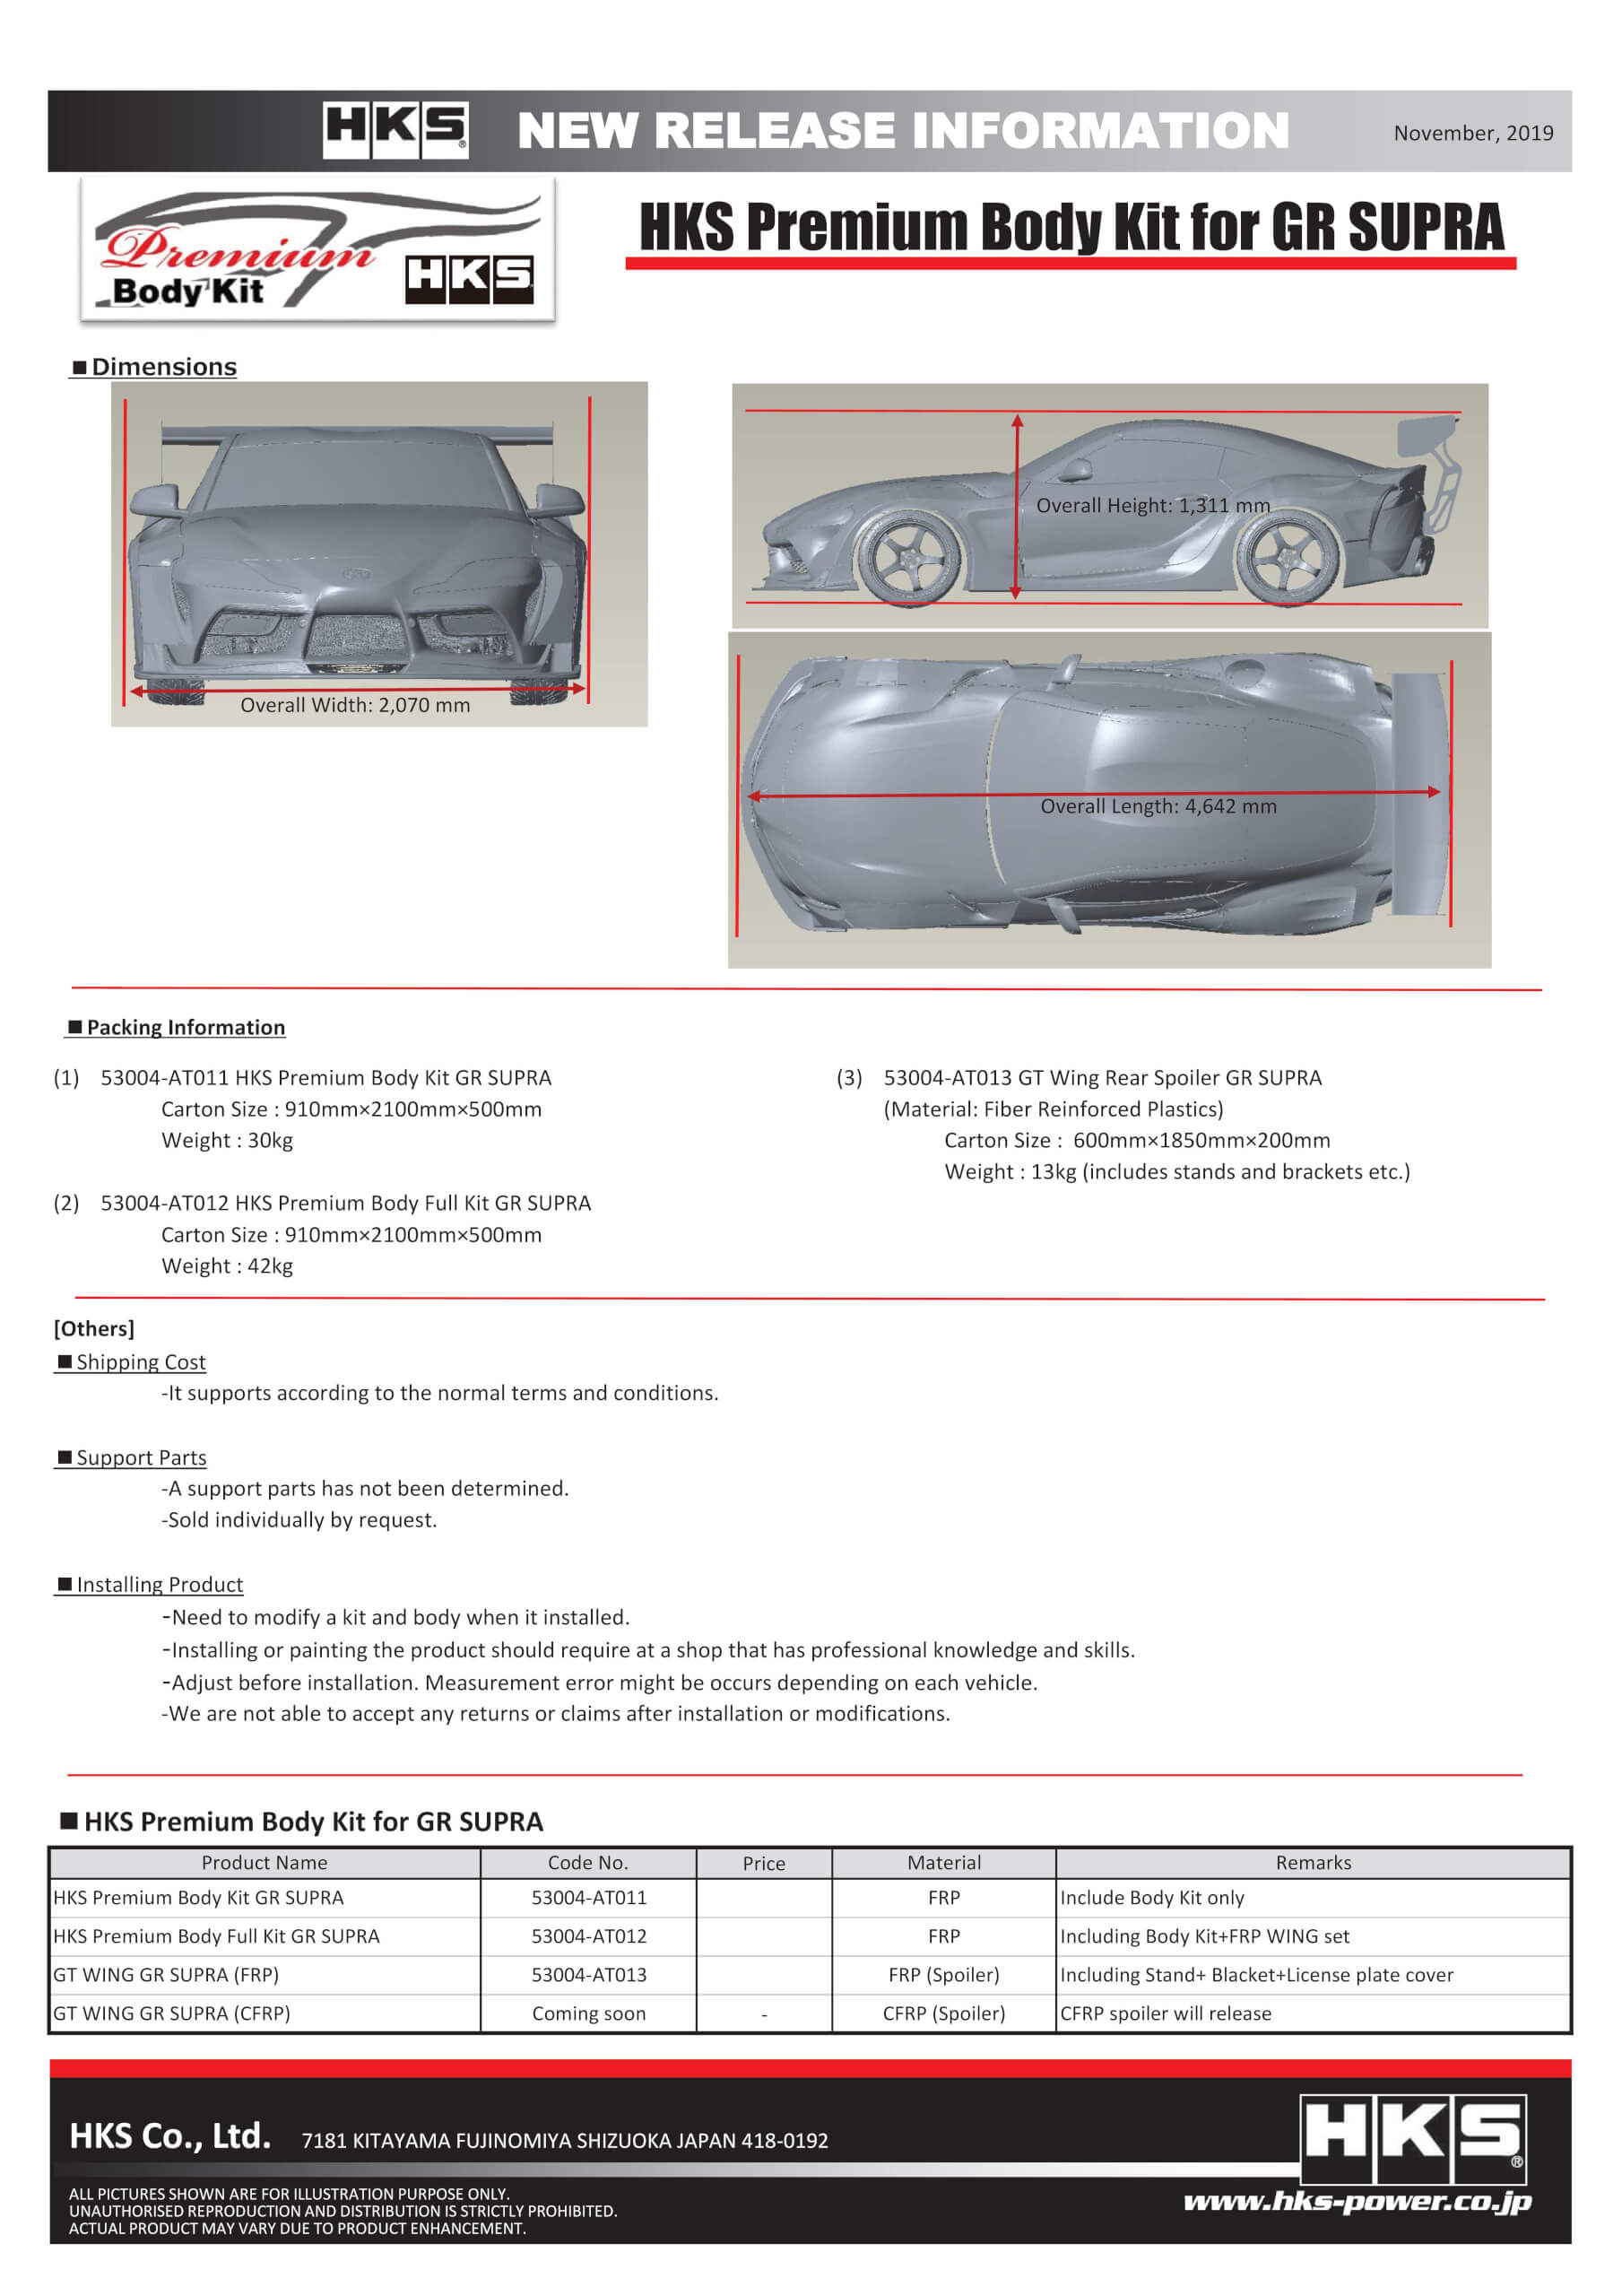 53004-AT011-13_Premium Body Kit for GR SUPRA(For Distributor).jpg